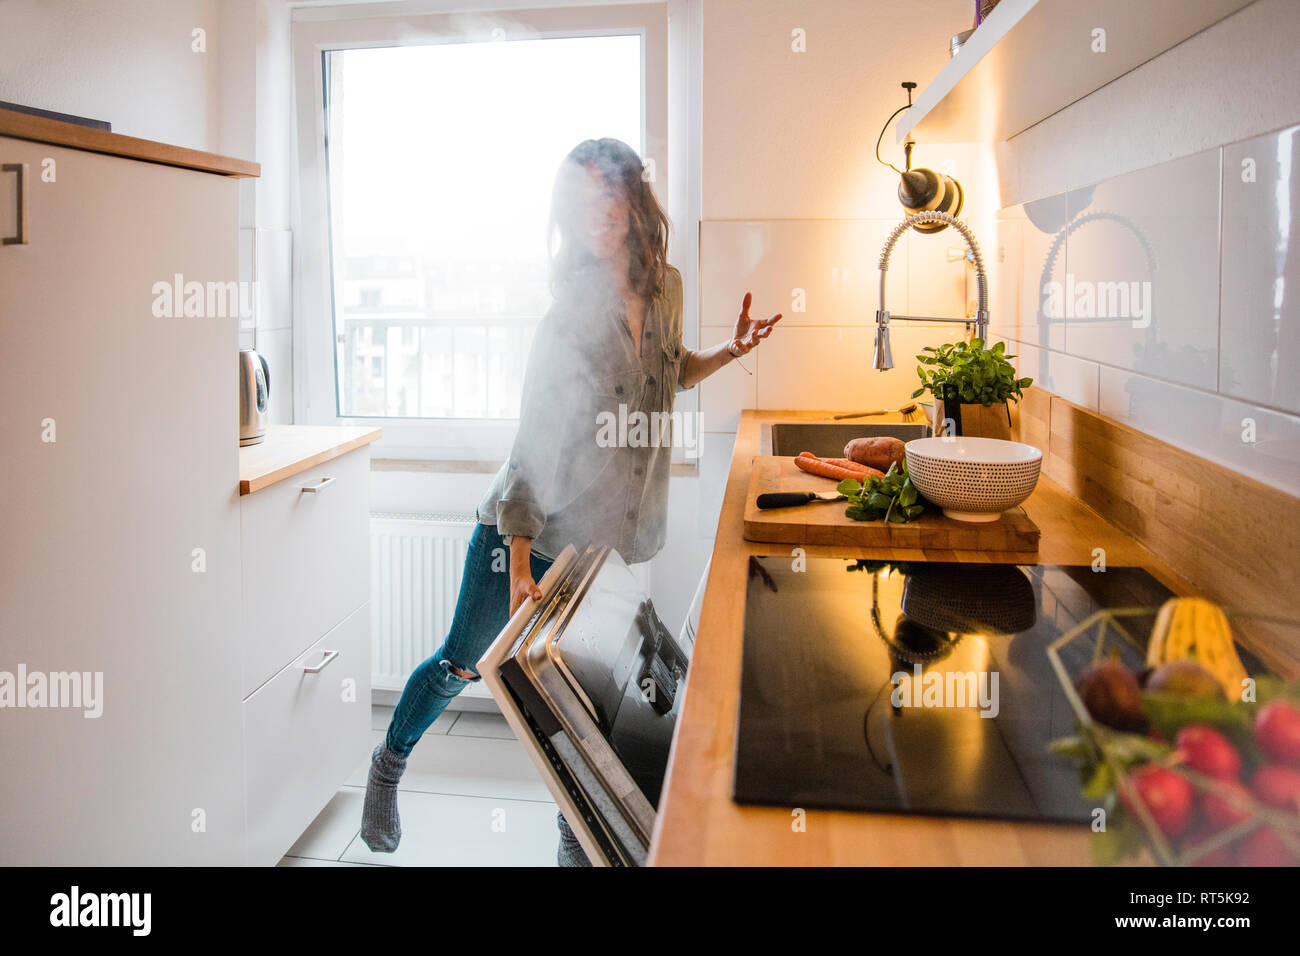 Frau Eröffnung Dampf Geschirrspüler in der Küche Stockfoto